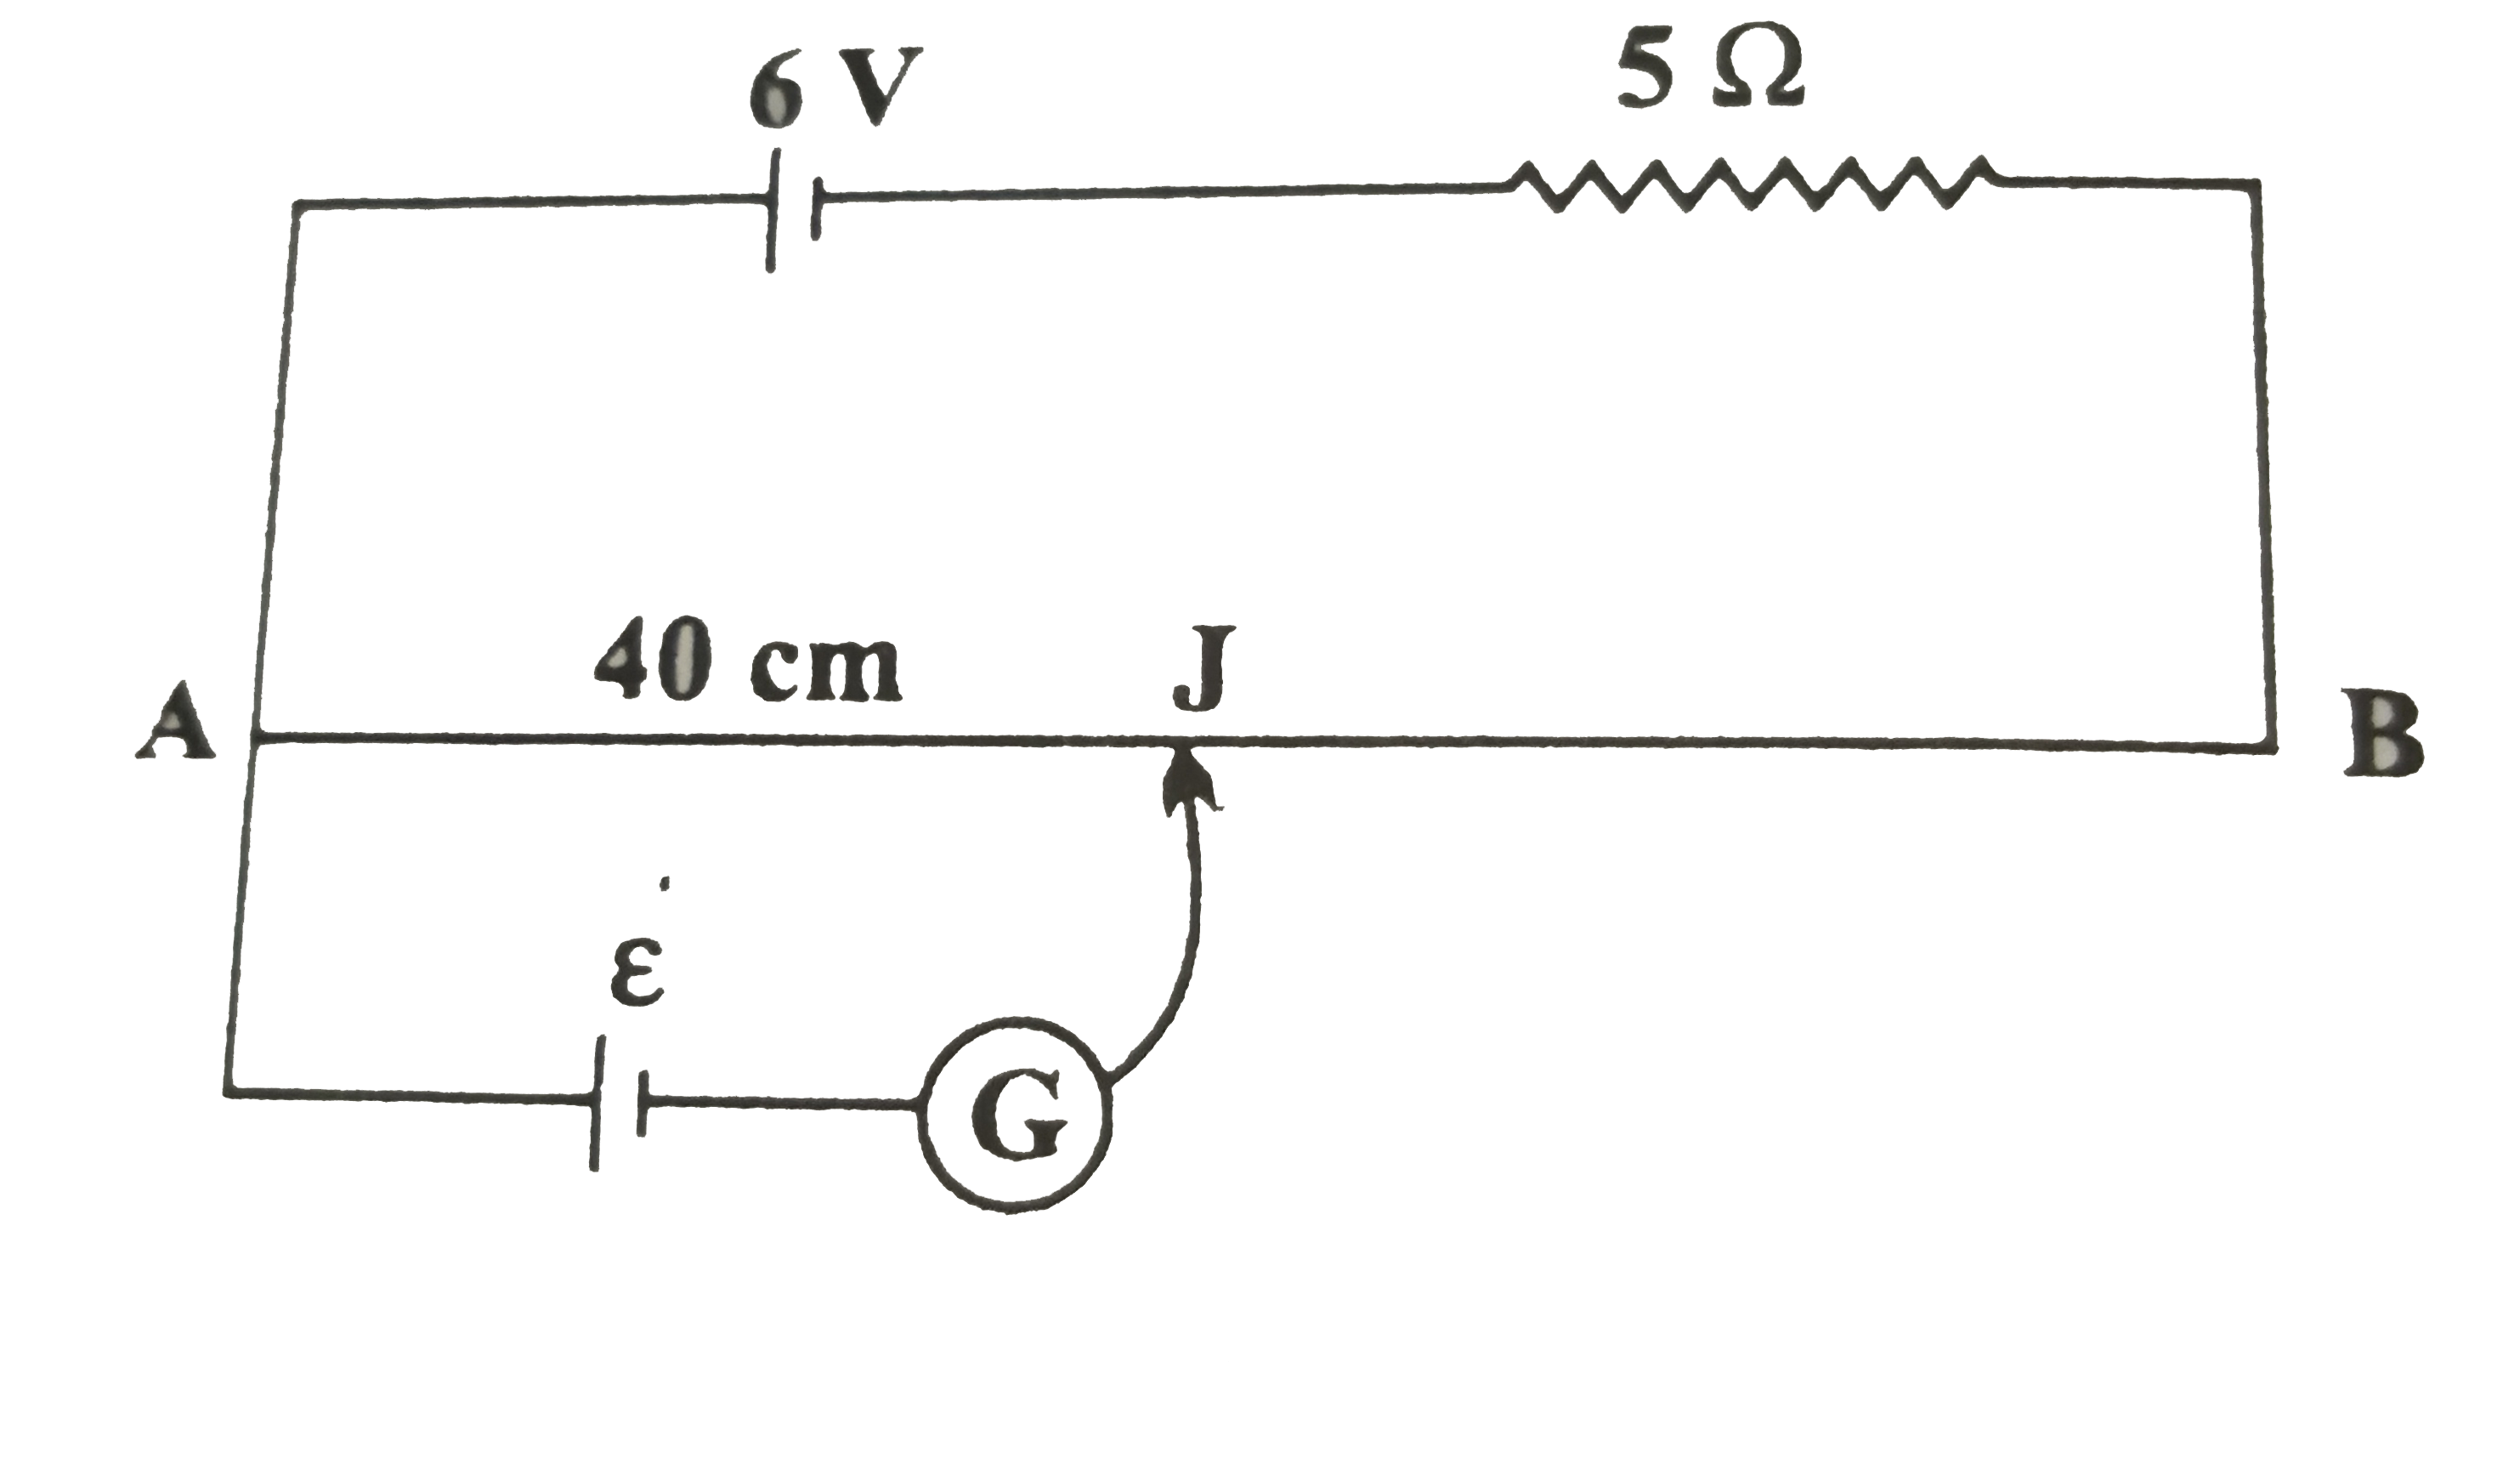 विभवमापी के एक मीटर लंबे तार का प्रतिरोध 10Omega है। इसके साथ श्रेणीक्रम में 6V की बैटरी एवं 5Omega का प्रतिरोध जोड़ा गया है उस प्राथमिक सेल का वि. वा. बल ज्ञात कीजिए जो 40 cm की दूरी पर संतुलन बिंदु देता है।